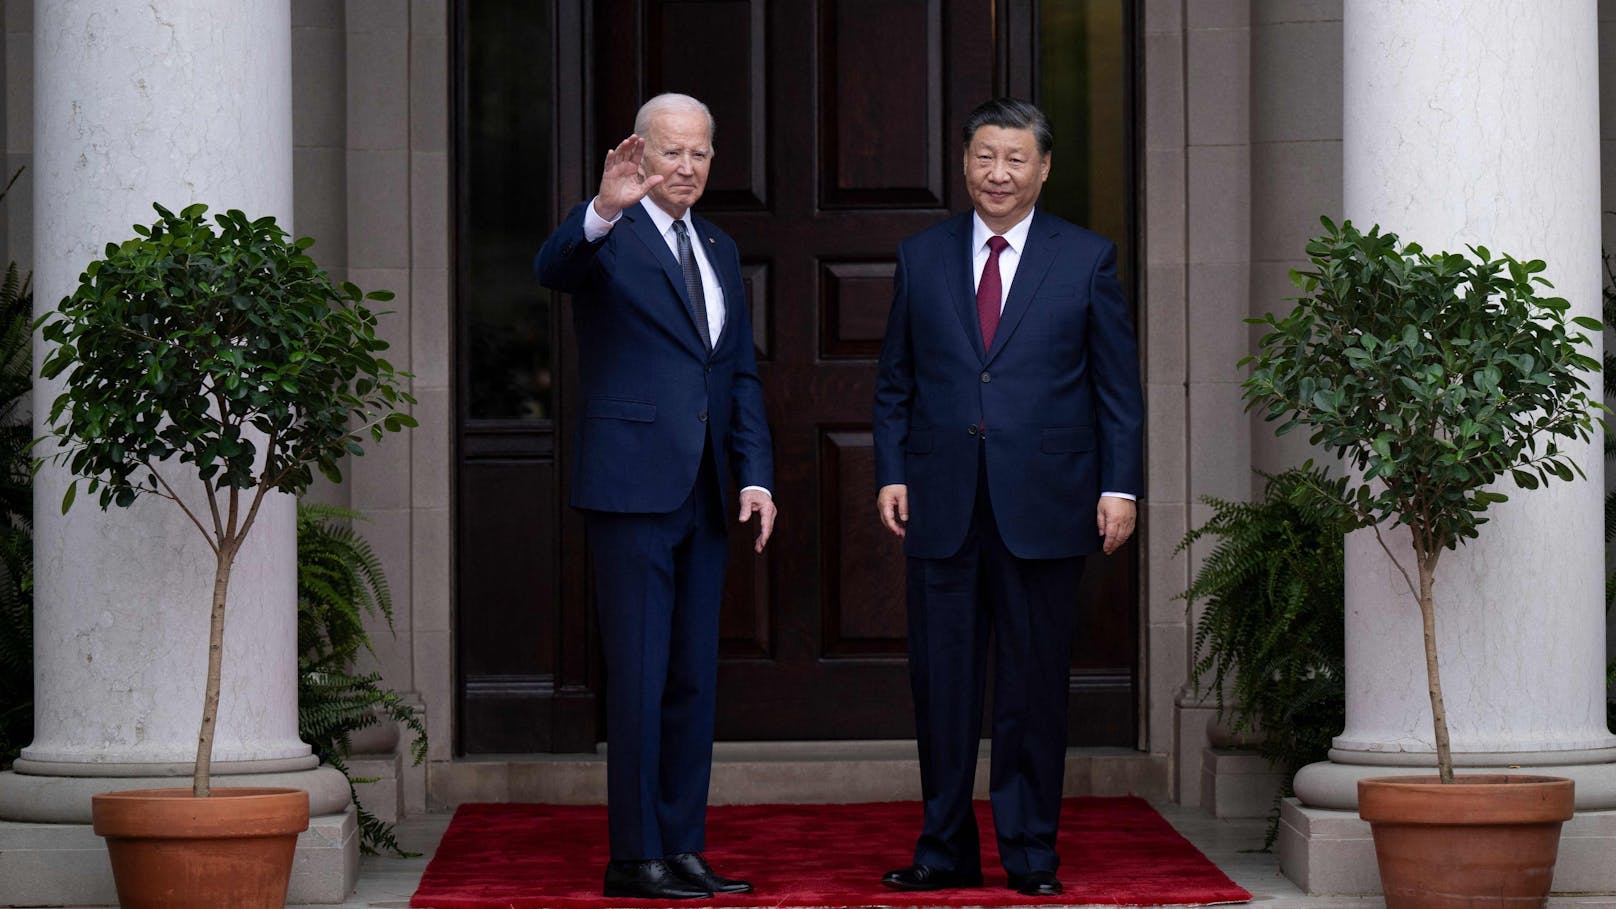 Eklat nach Treffen – Biden nennt Xi einen Diktator